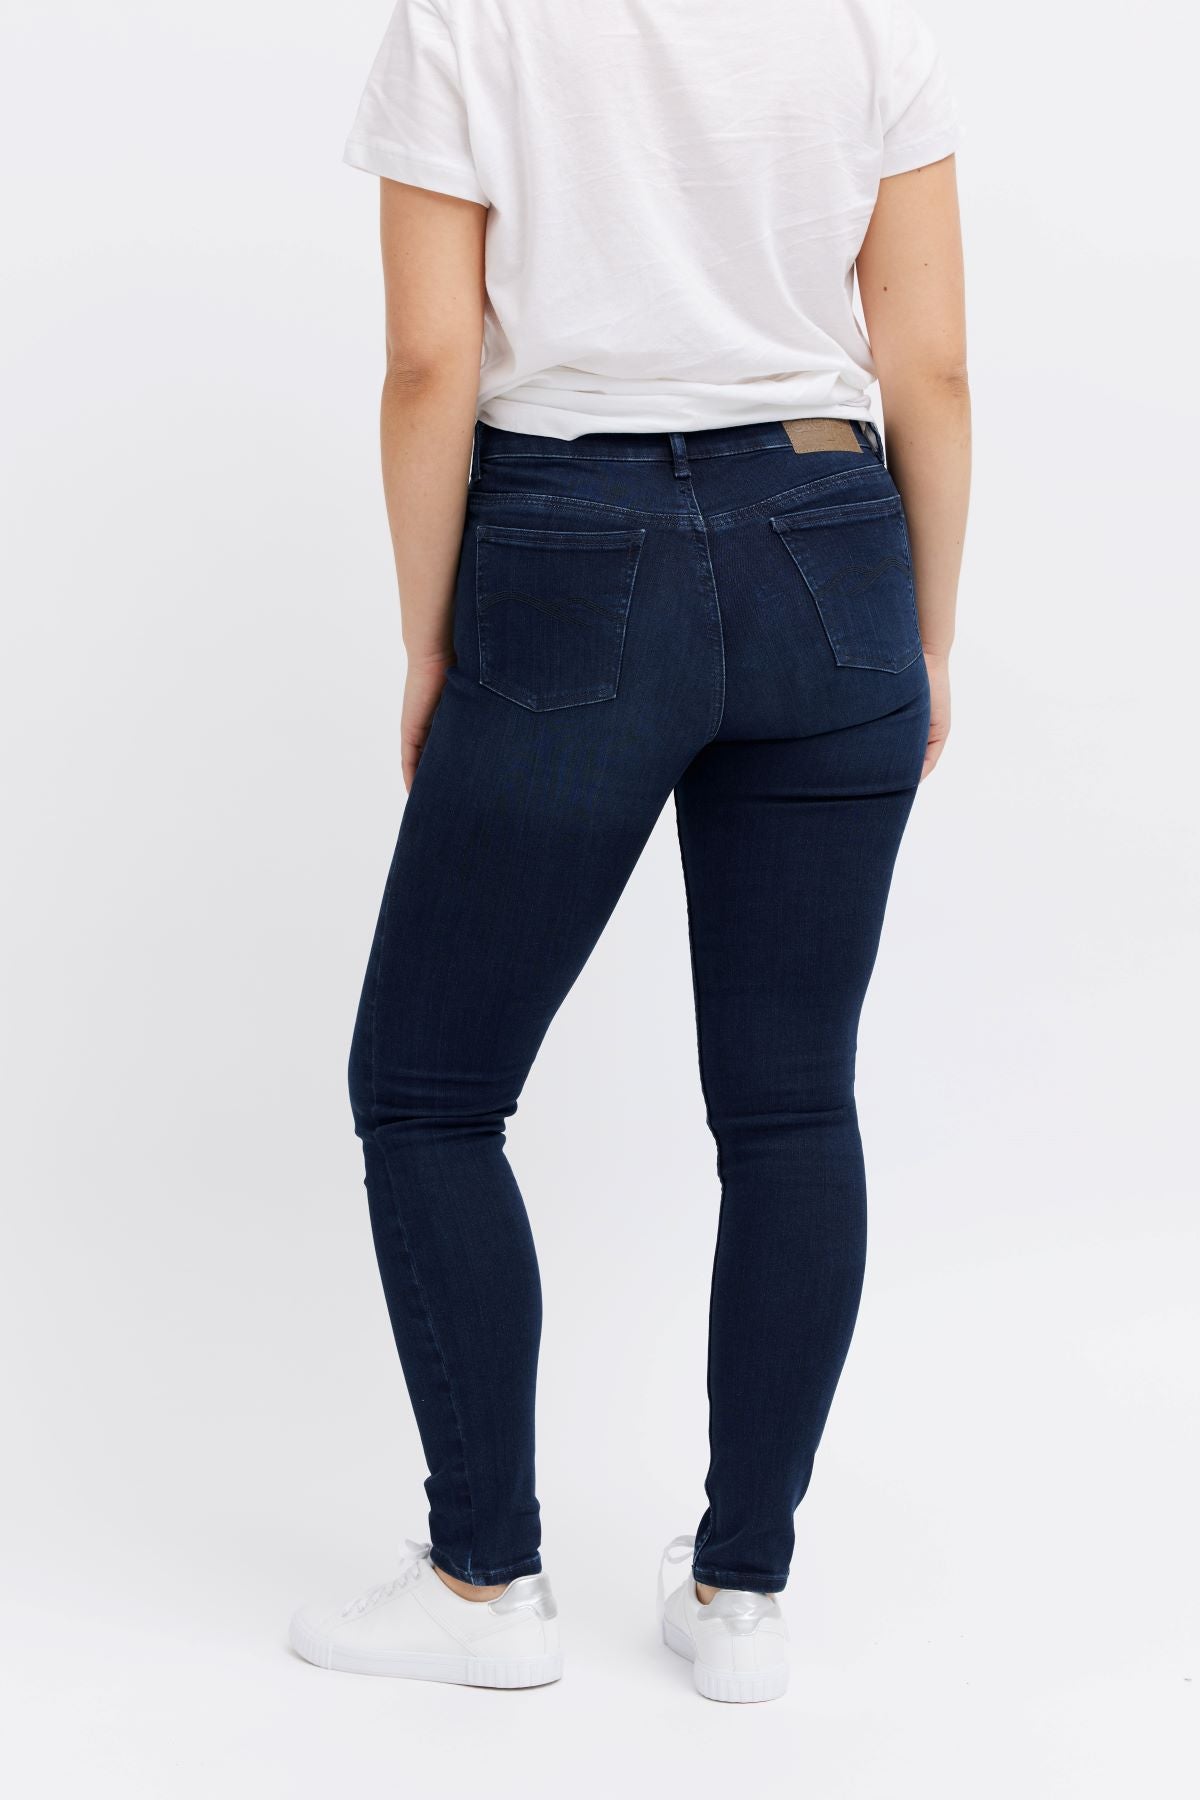 Organic blue jeans denim for women